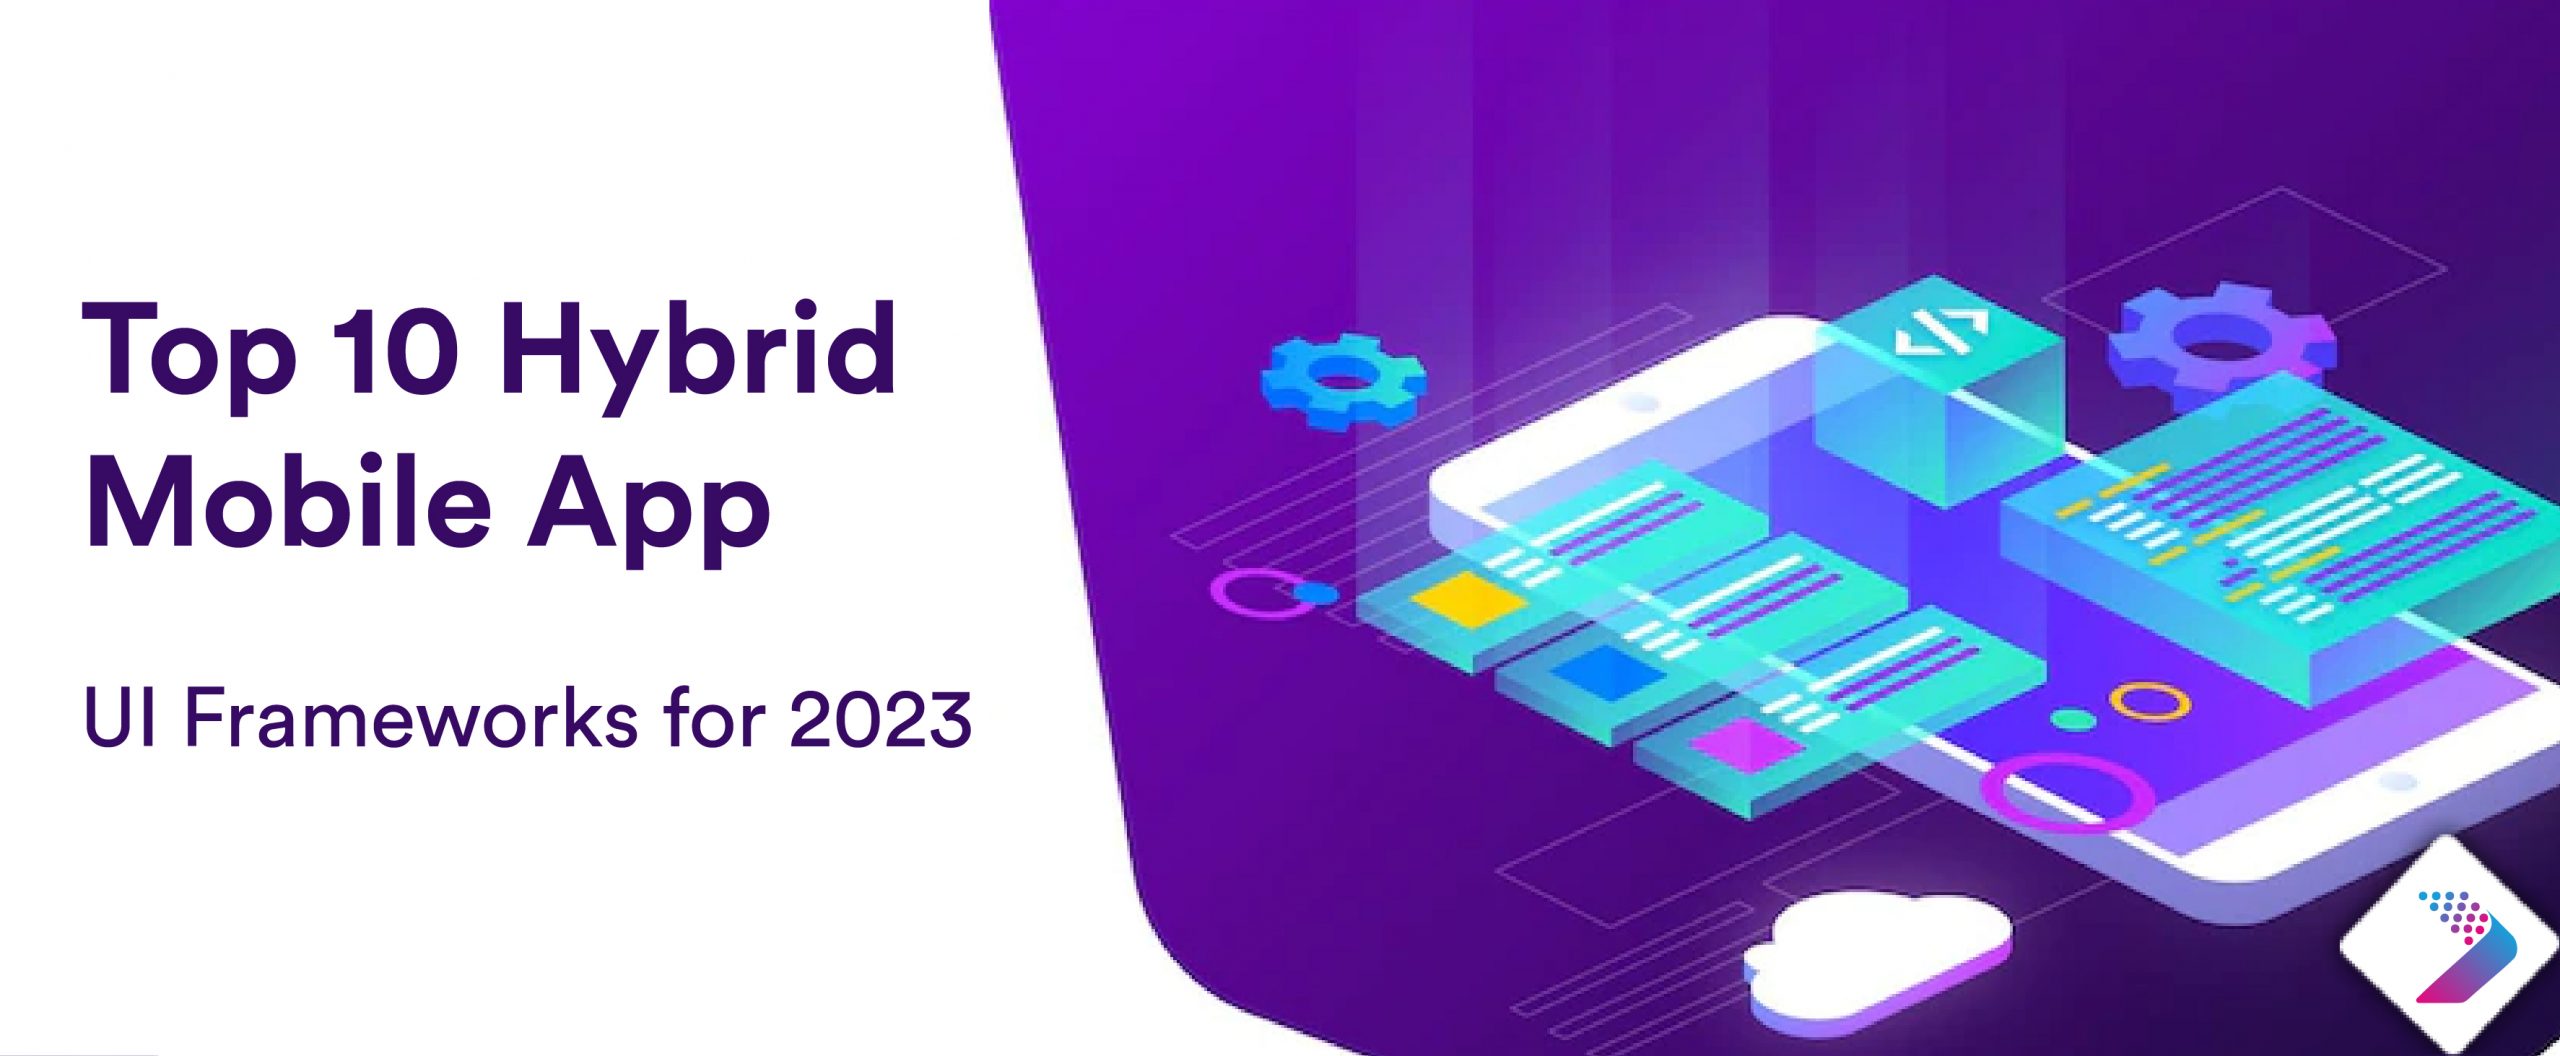 Top-10-Hybrid-Mobile-App-UI-Frameworks-for-2023-01-scaled